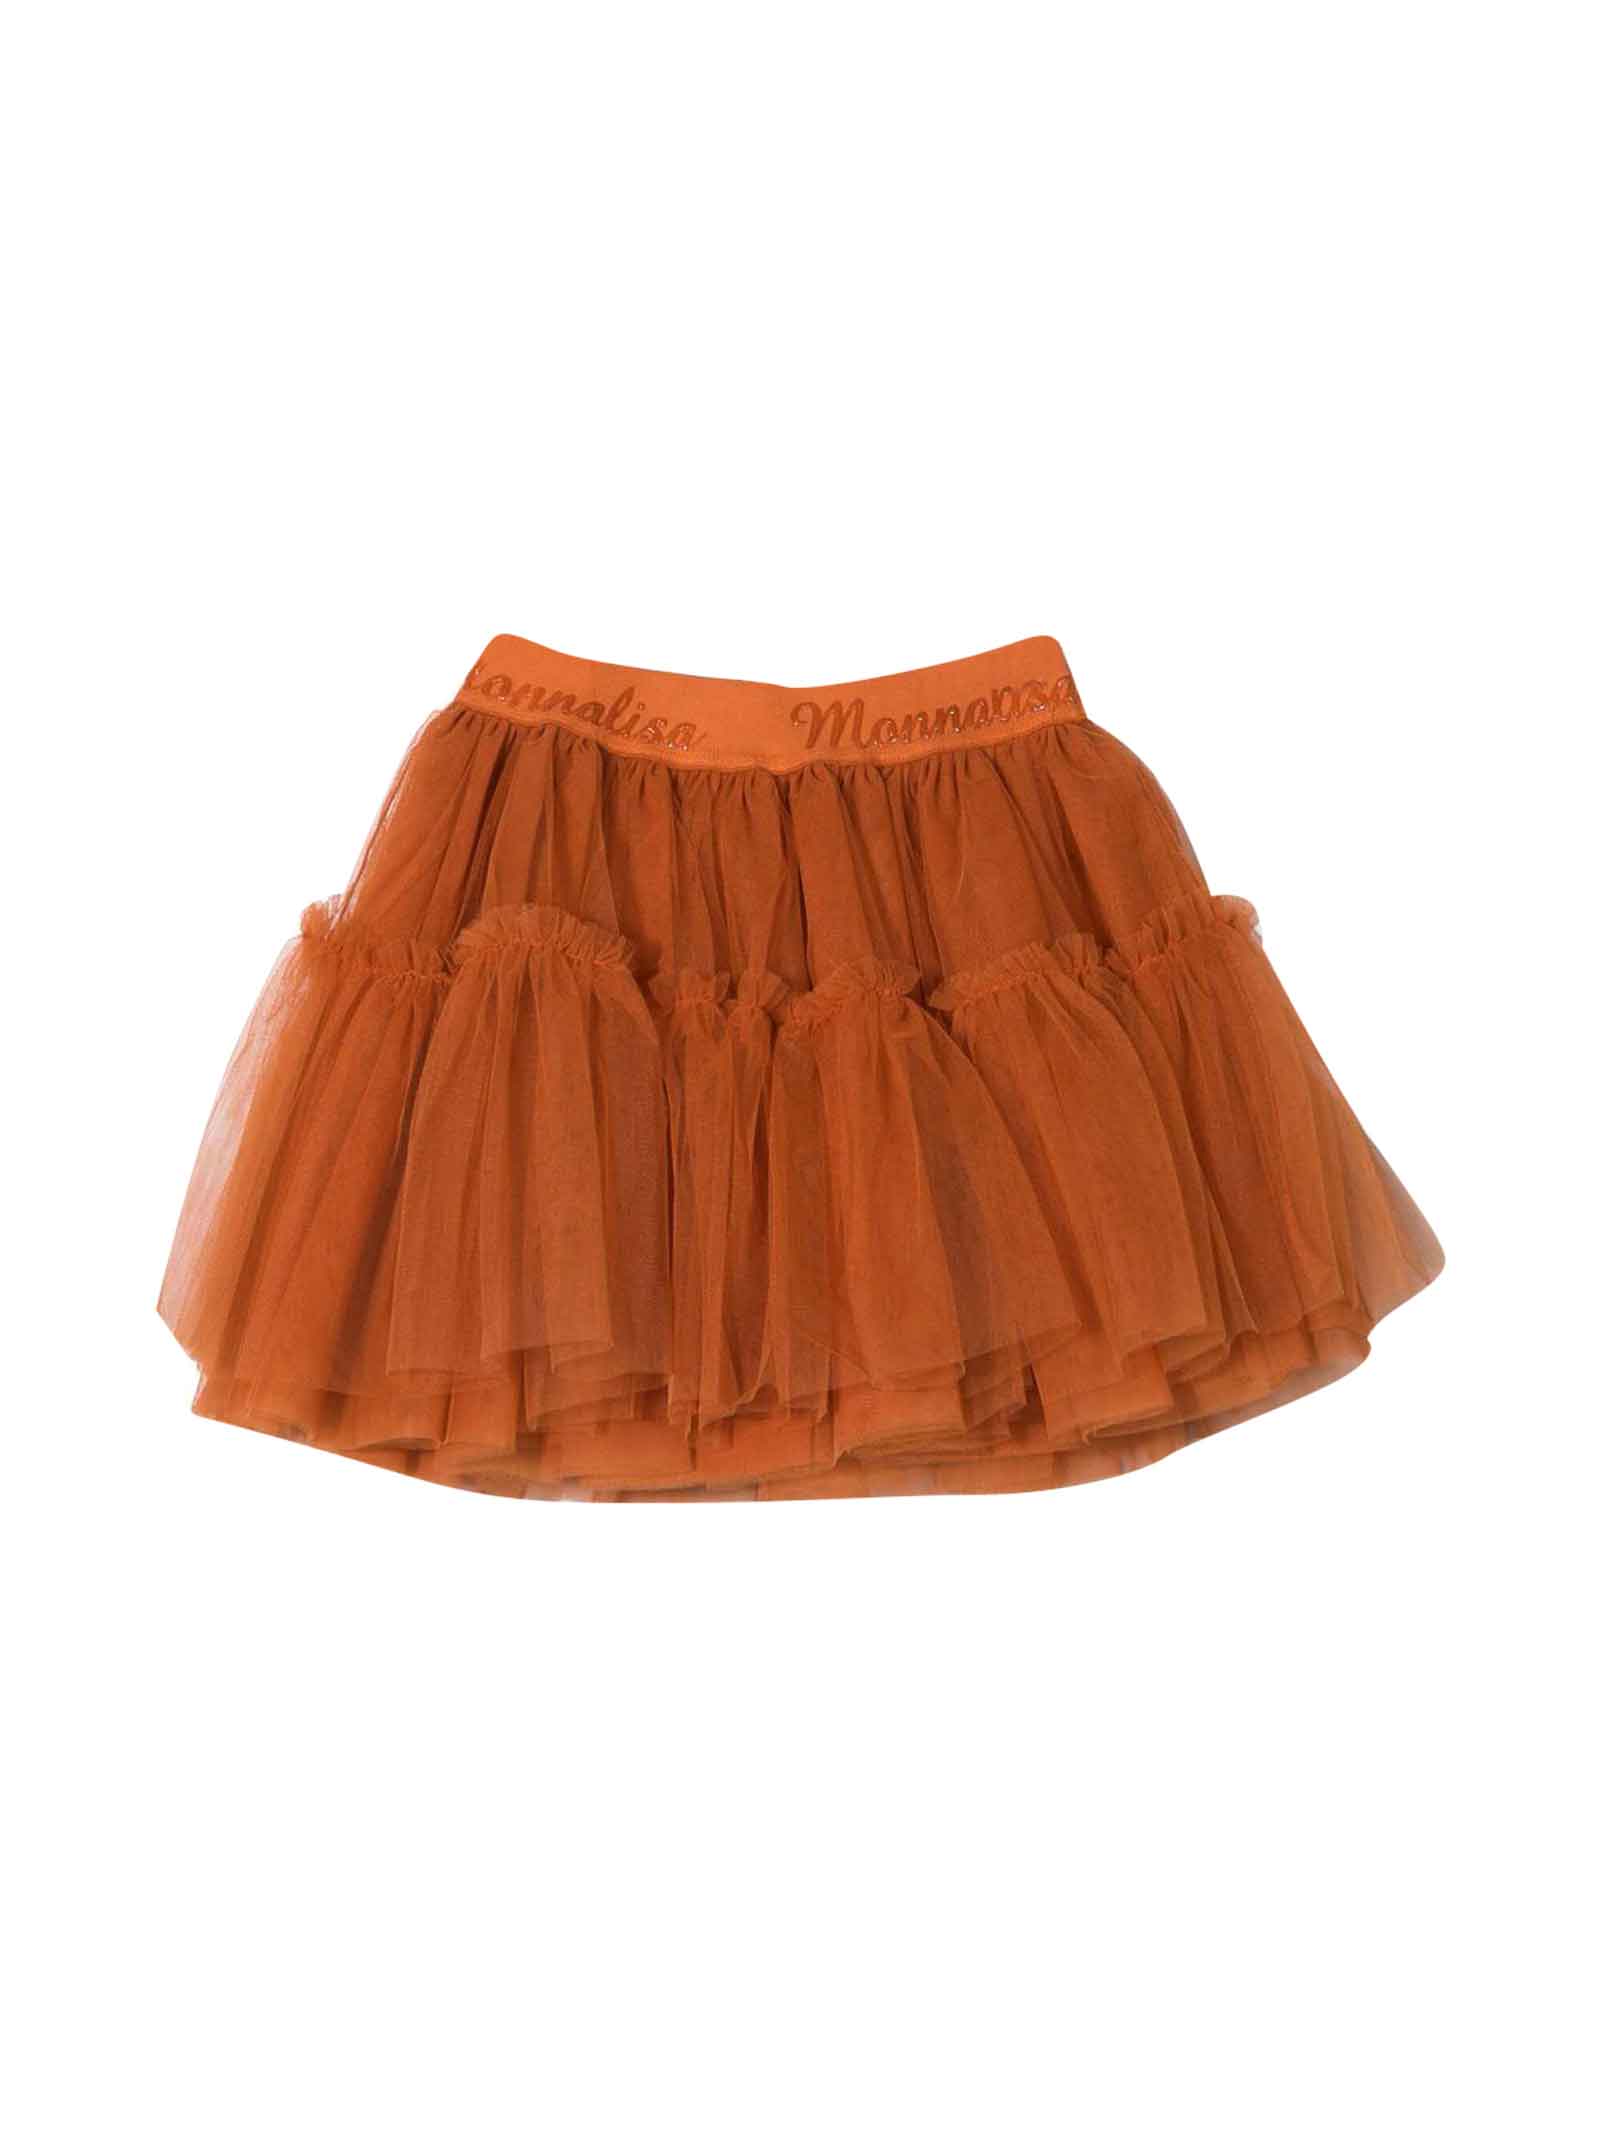 Monnalisa Orange Skirt Girl